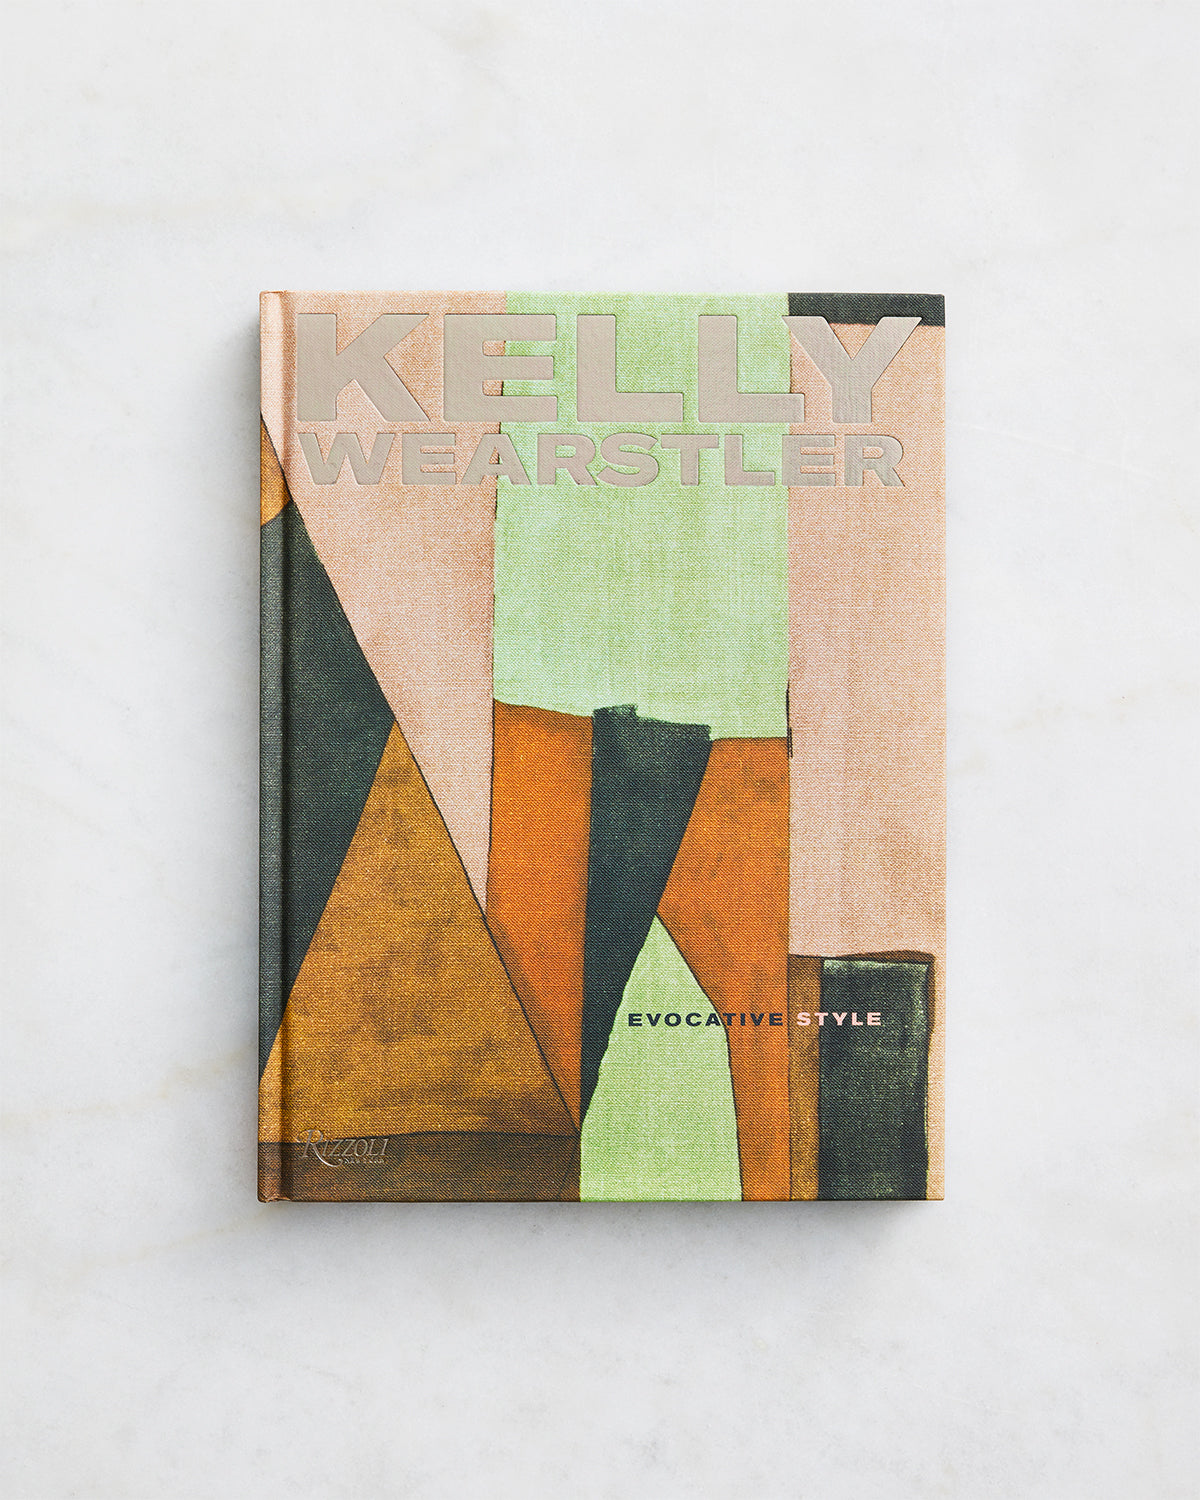 Kelly Wearstler: Evocative Style by Kelly Wearstler